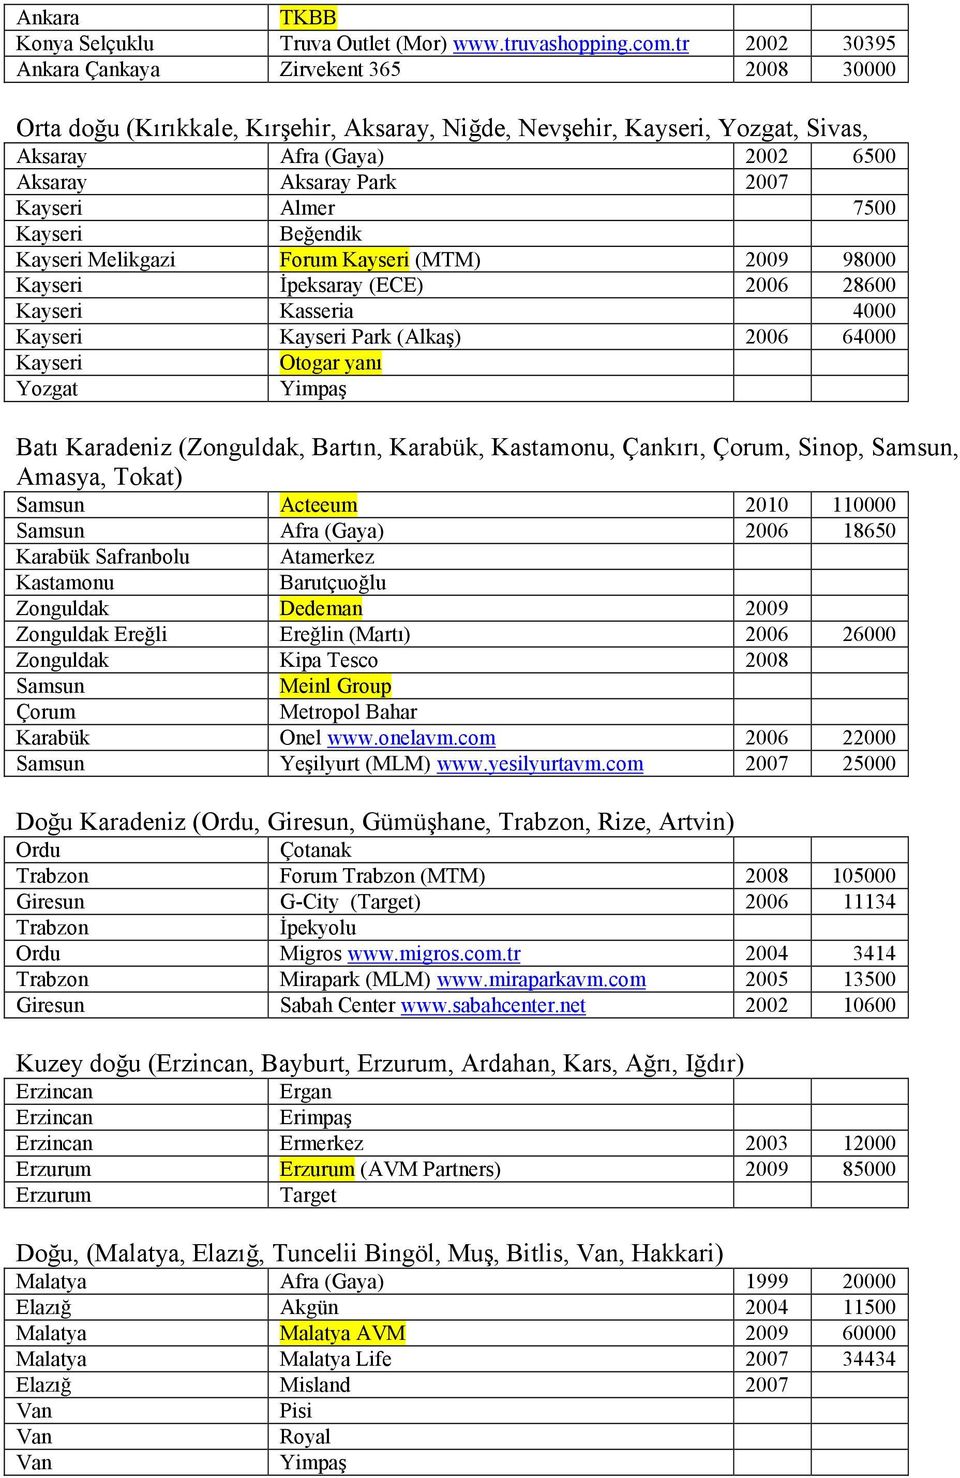 7500 Kayseri Beğendik Kayseri Melikgazi Forum Kayseri (MTM) 2009 98000 Kayseri İpeksaray (ECE) 2006 28600 Kayseri Kasseria 4000 Kayseri Kayseri Park (Alkaş) 2006 64000 Kayseri Yozgat Otogar yanı